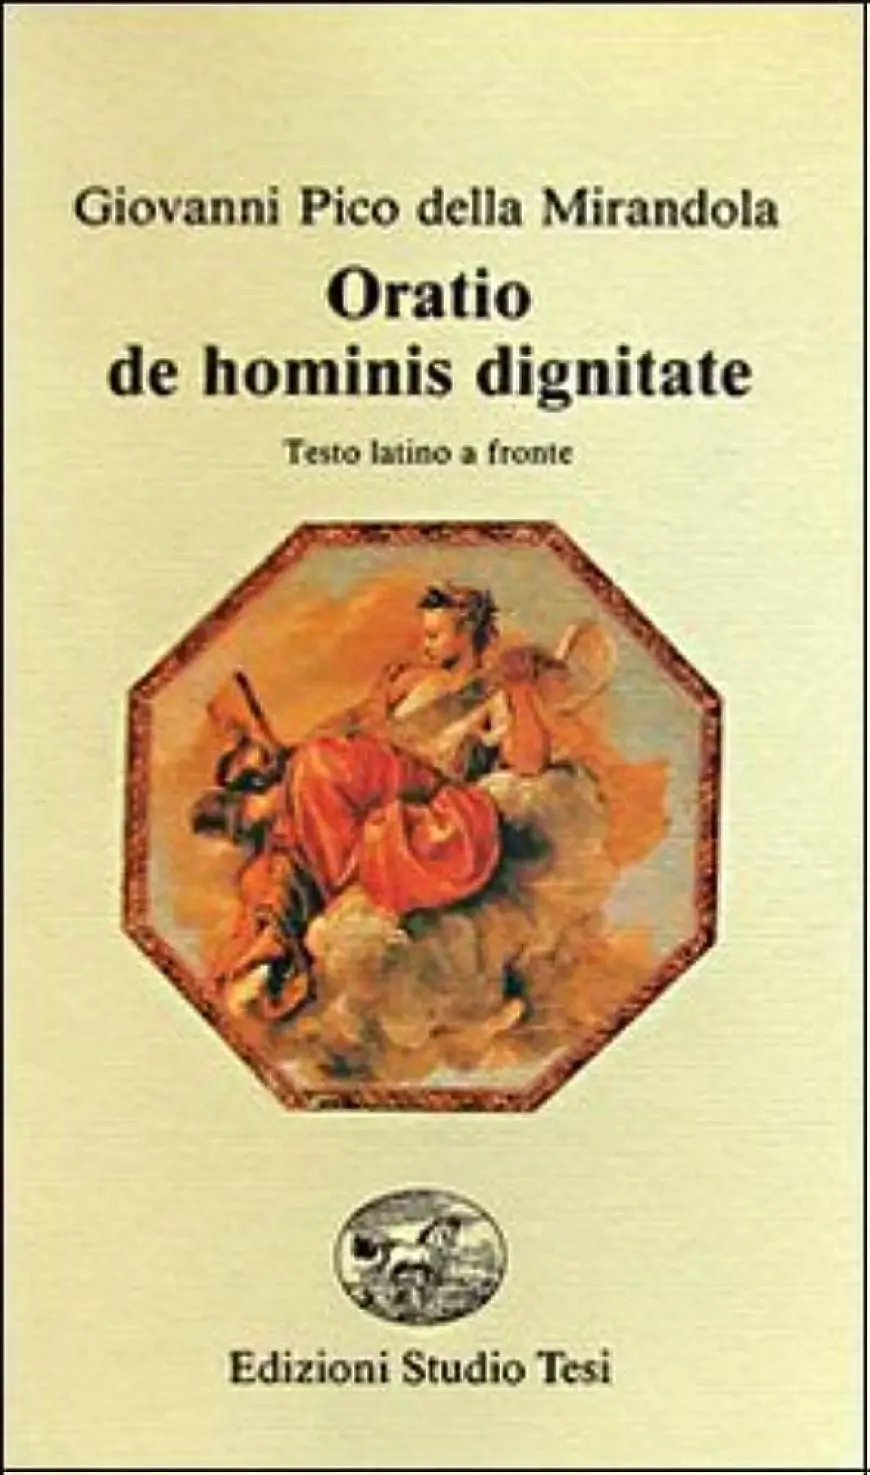 Livro Oratio de Hominis Dignitate em latim